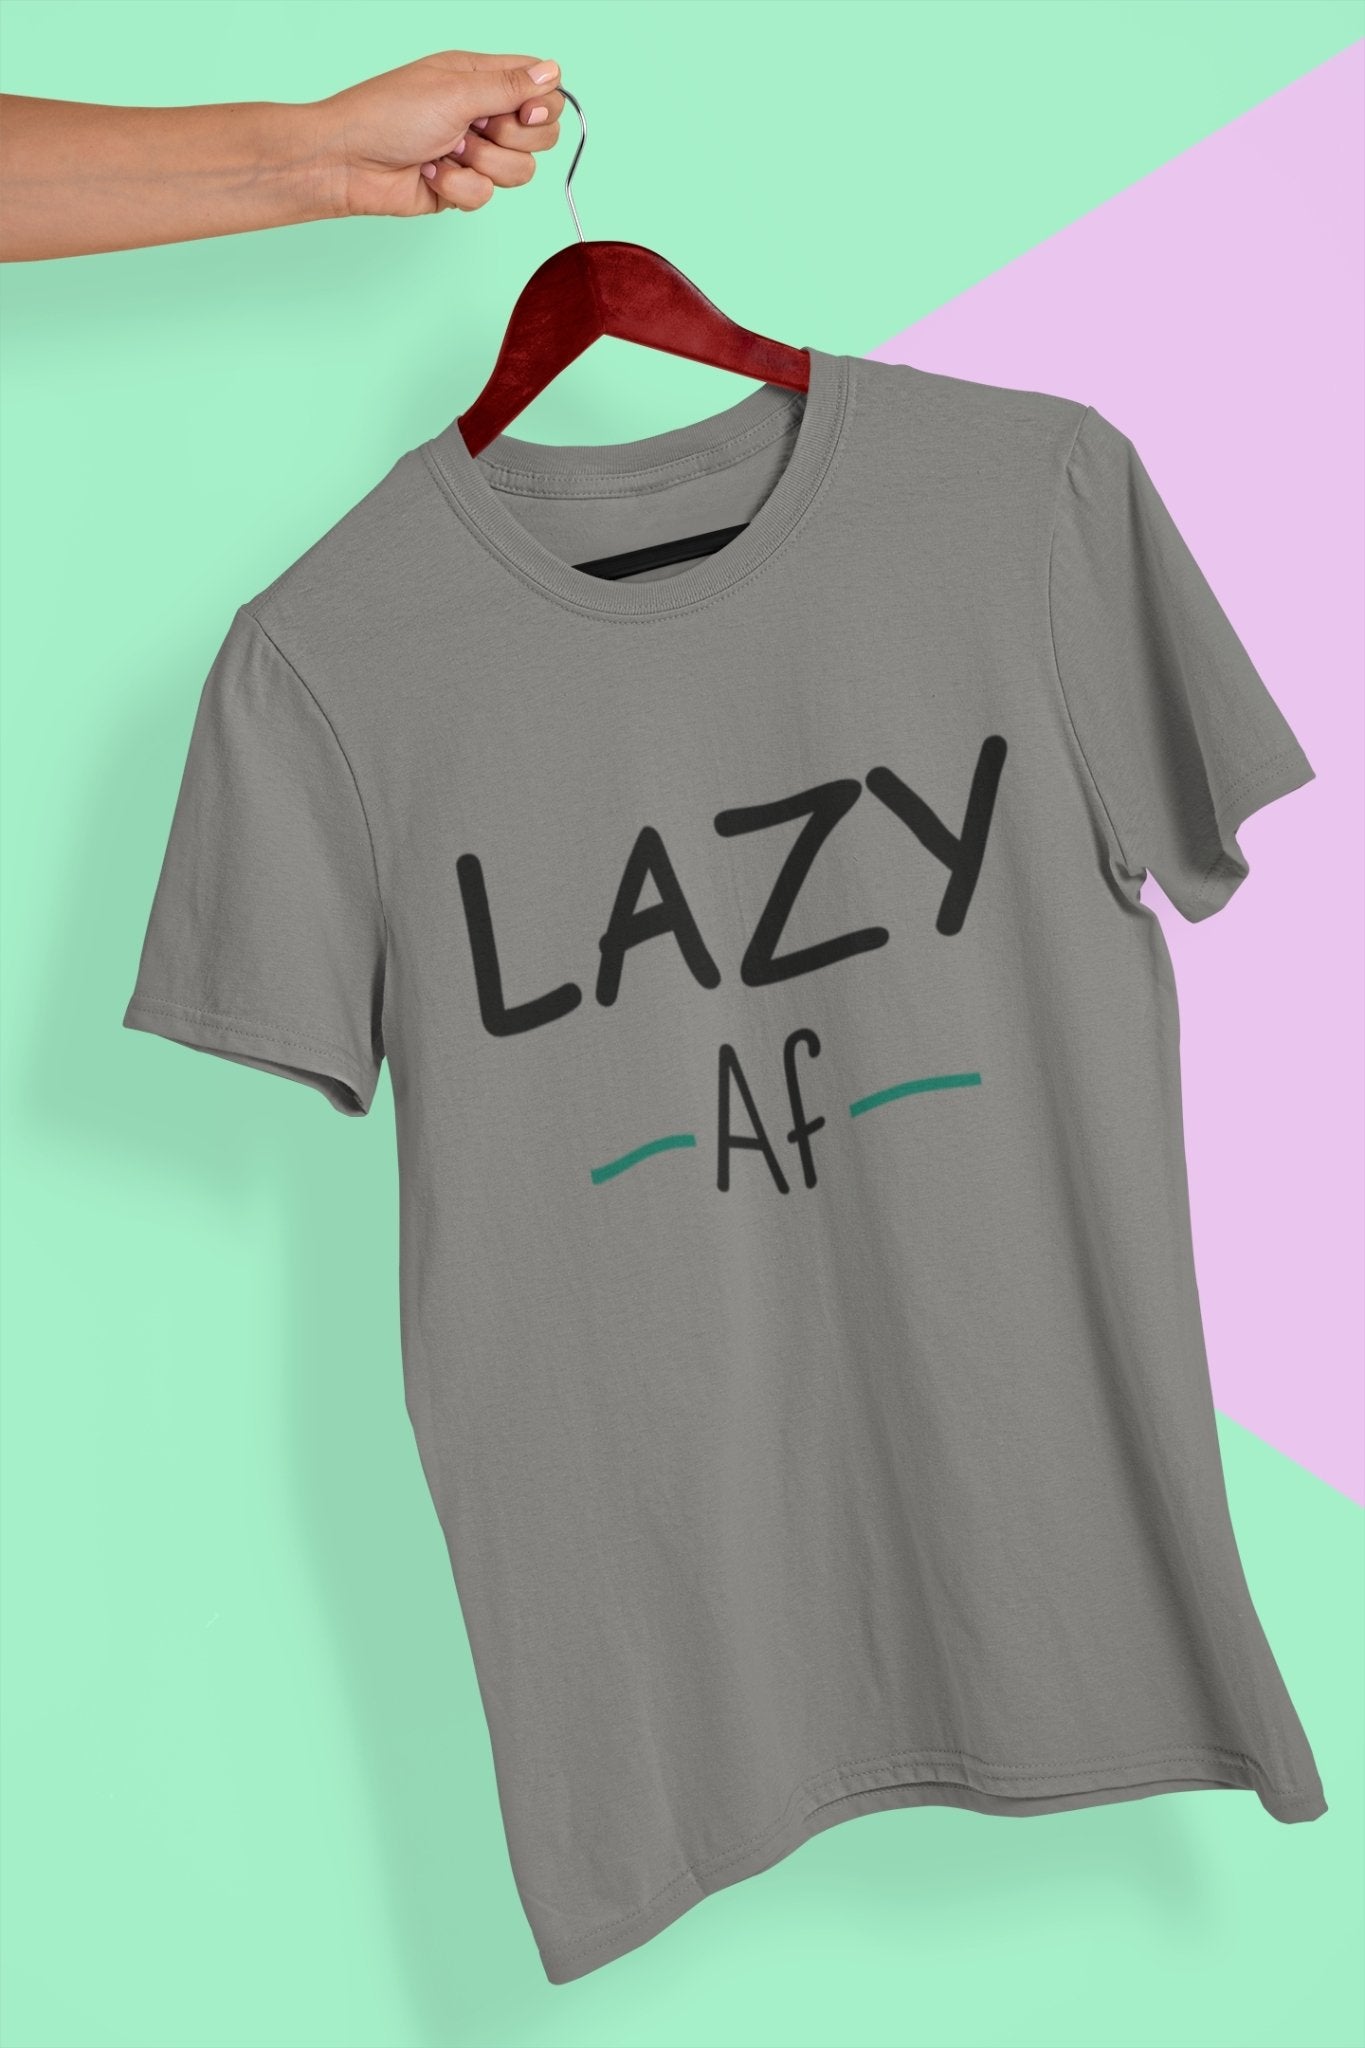 Lazy Af Typography Mens Half Sleeves T-shirt- FunkyTeesClub - Funky Tees Club